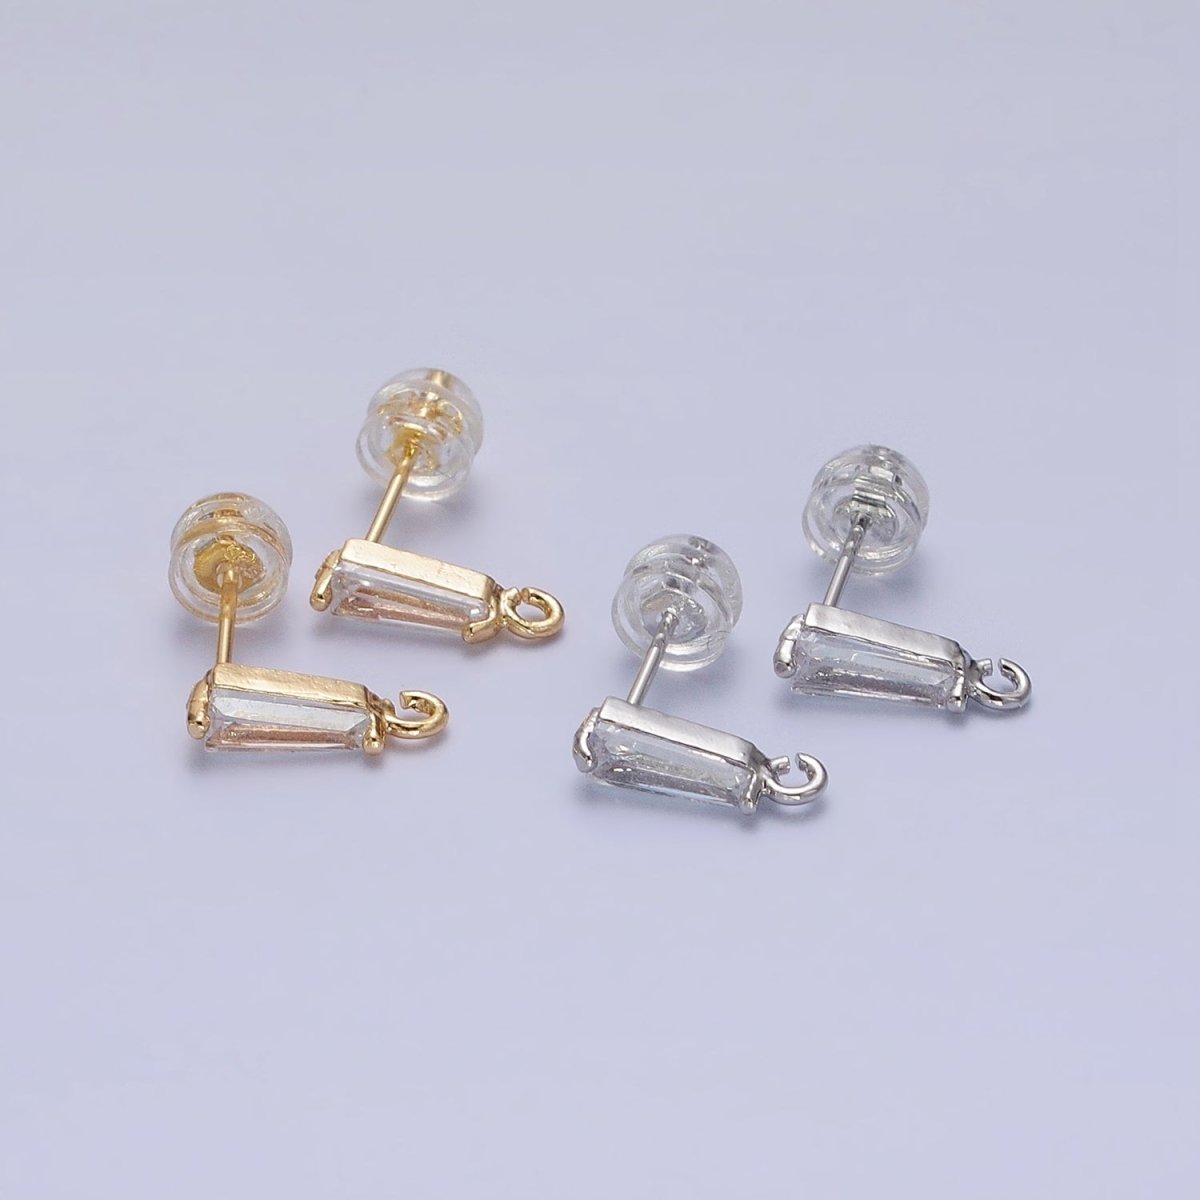 Mini Baguette Cut CZ Diamond Stud Earring Gold Earring Post with Open Link for Earring Supply Z-184 Z-185 - DLUXCA